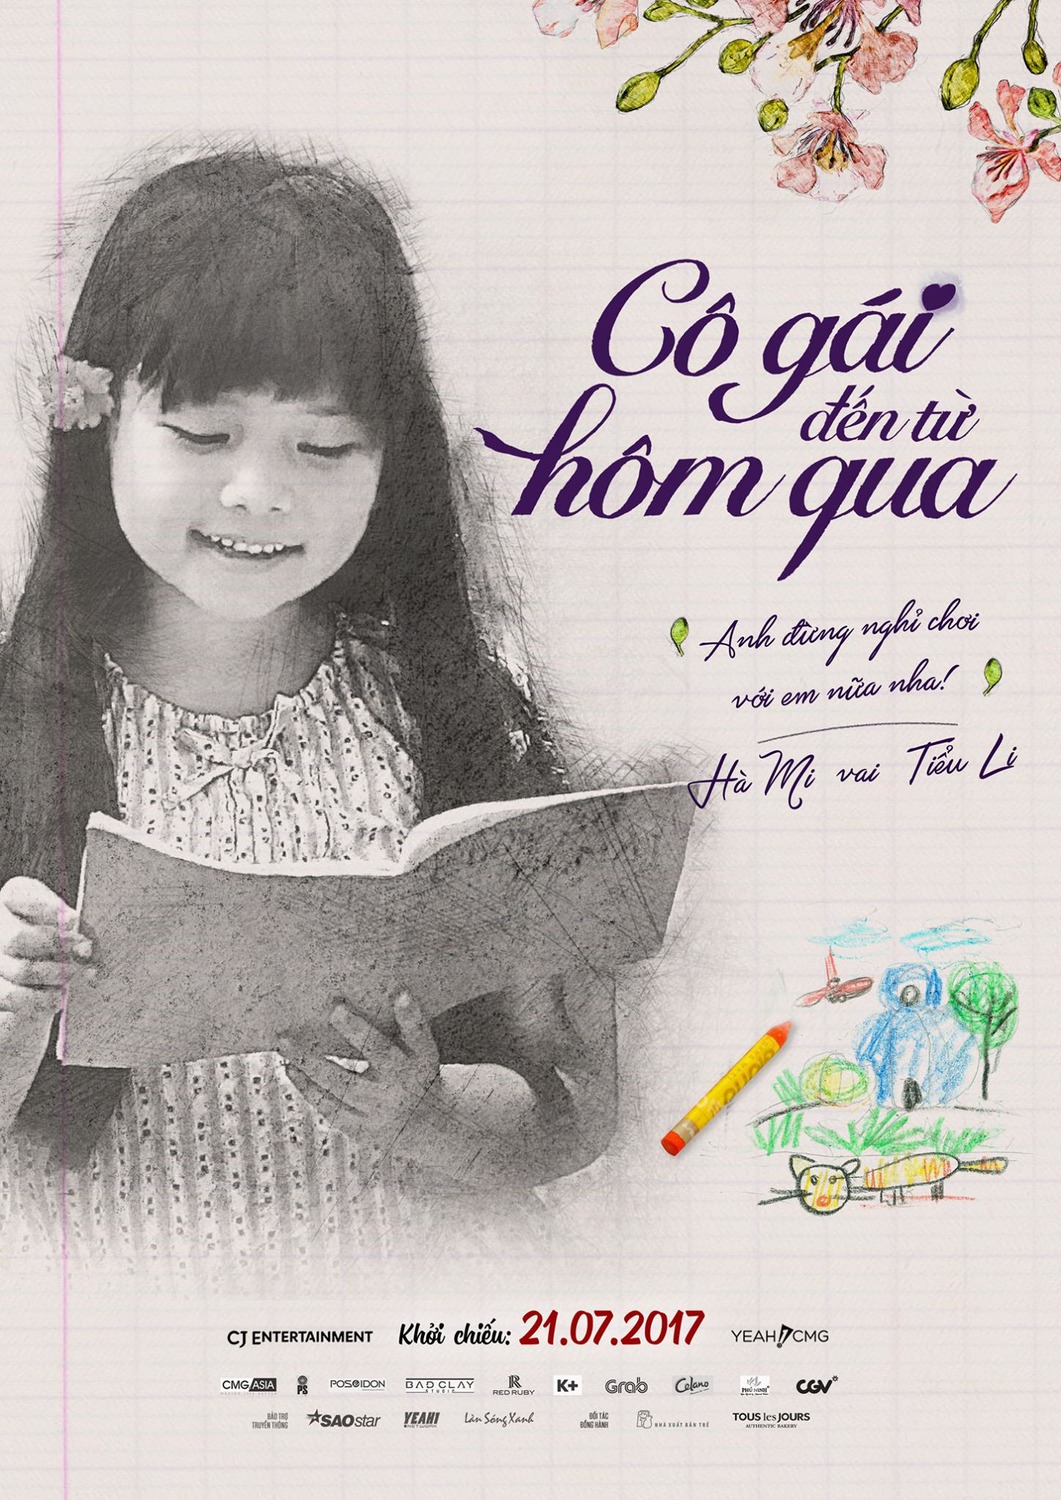 Extra Large Movie Poster Image for Co gai den tu hom qua (#13 of 14)